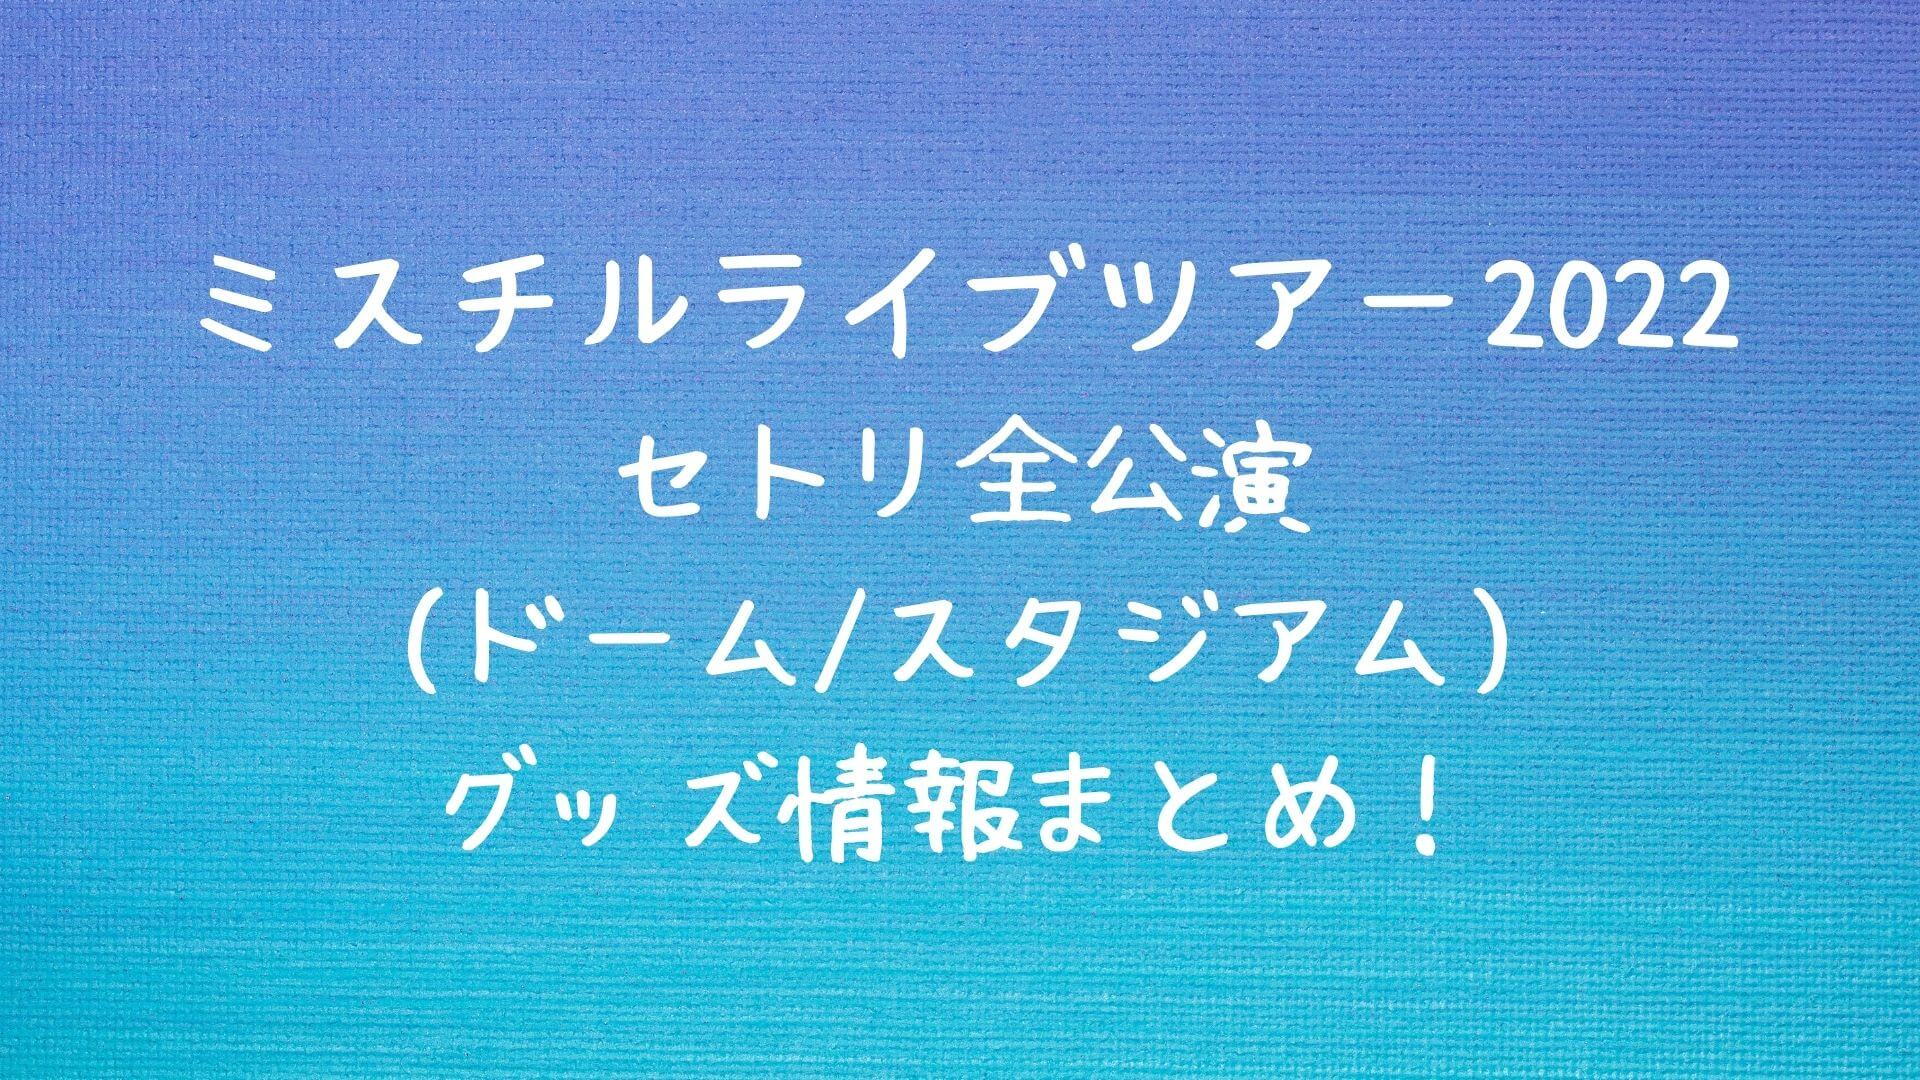 ミスチルライブ2022セトリ全公演(ドーム/スタジアム)グッズ情報まとめ ...